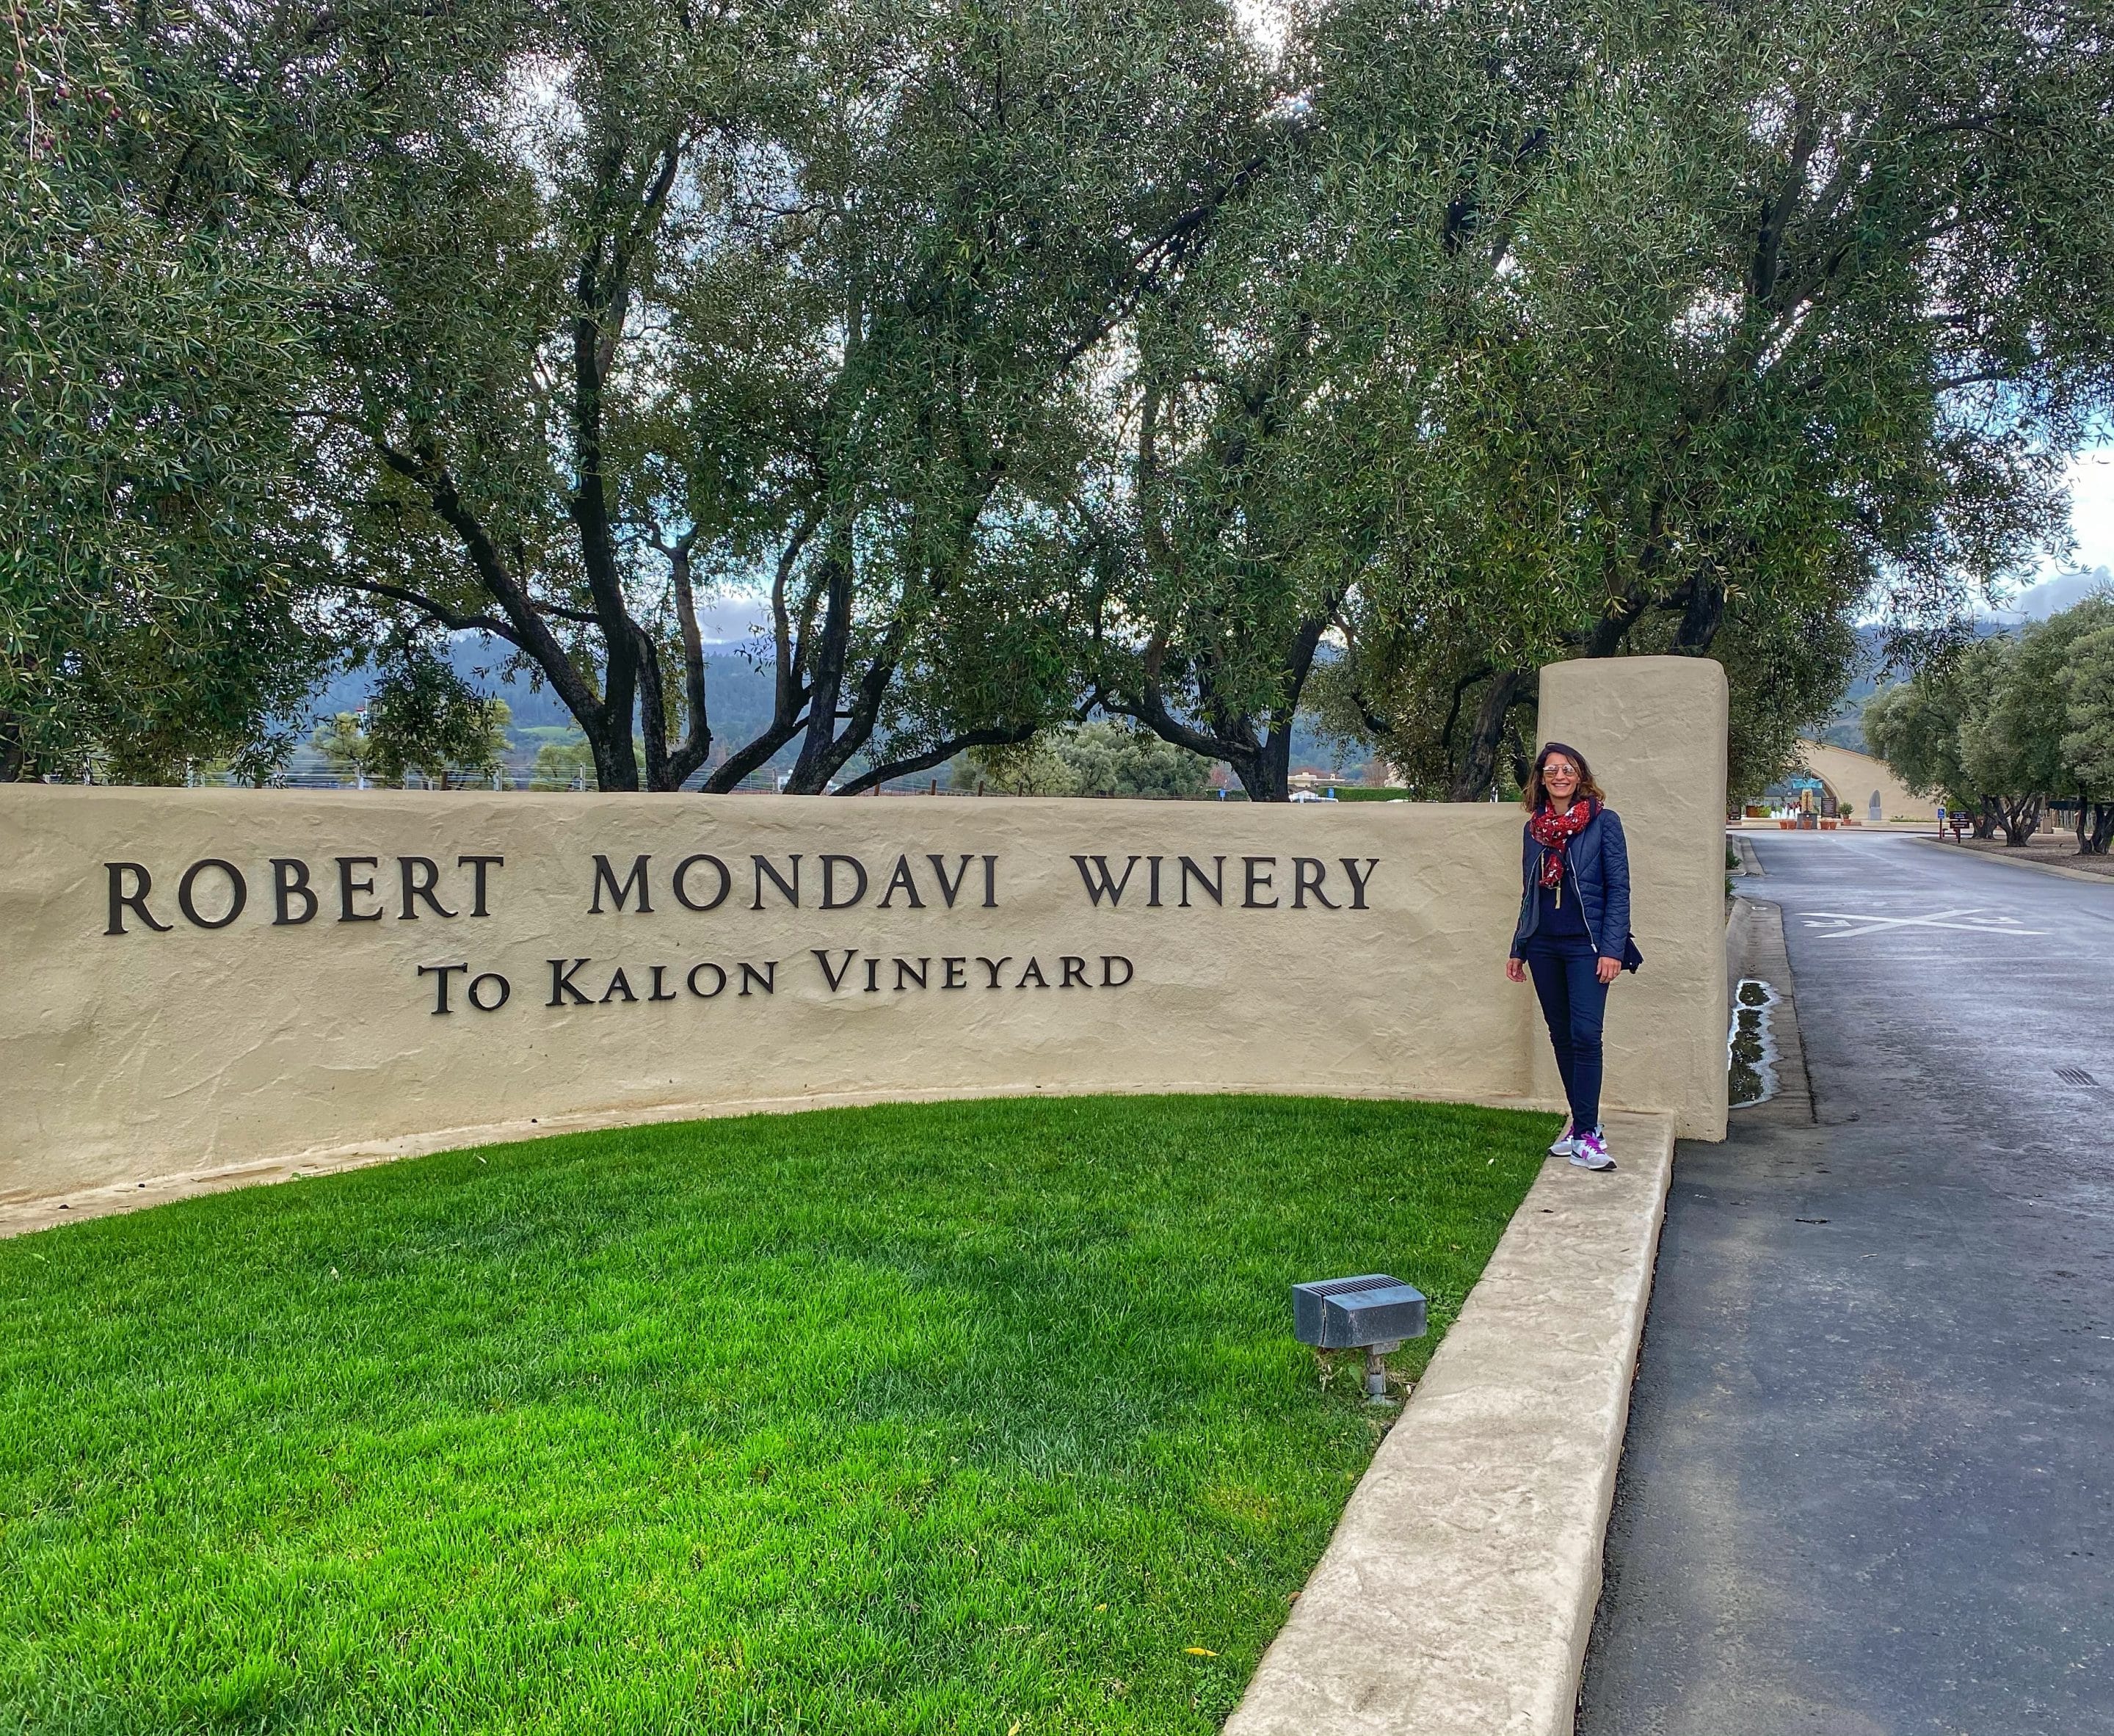 Welcome to Robert Mondavi Winery